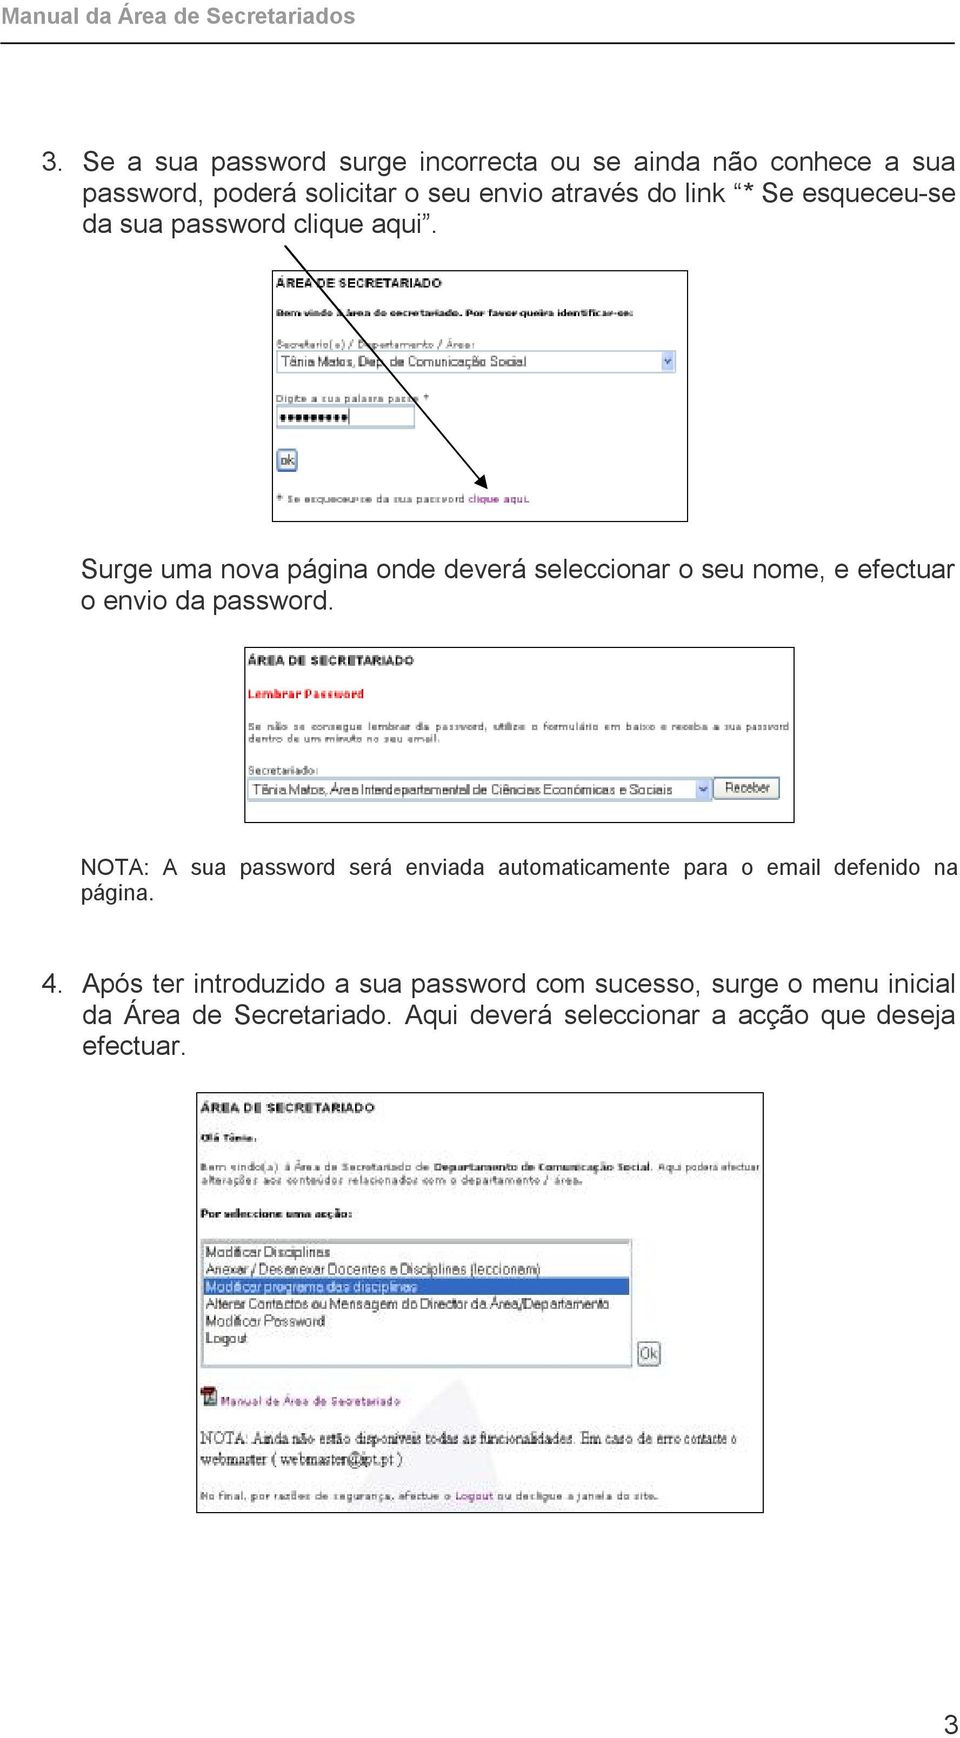 Surge uma nova página onde deverá seleccionar o seu nome, e efectuar o envio da password.